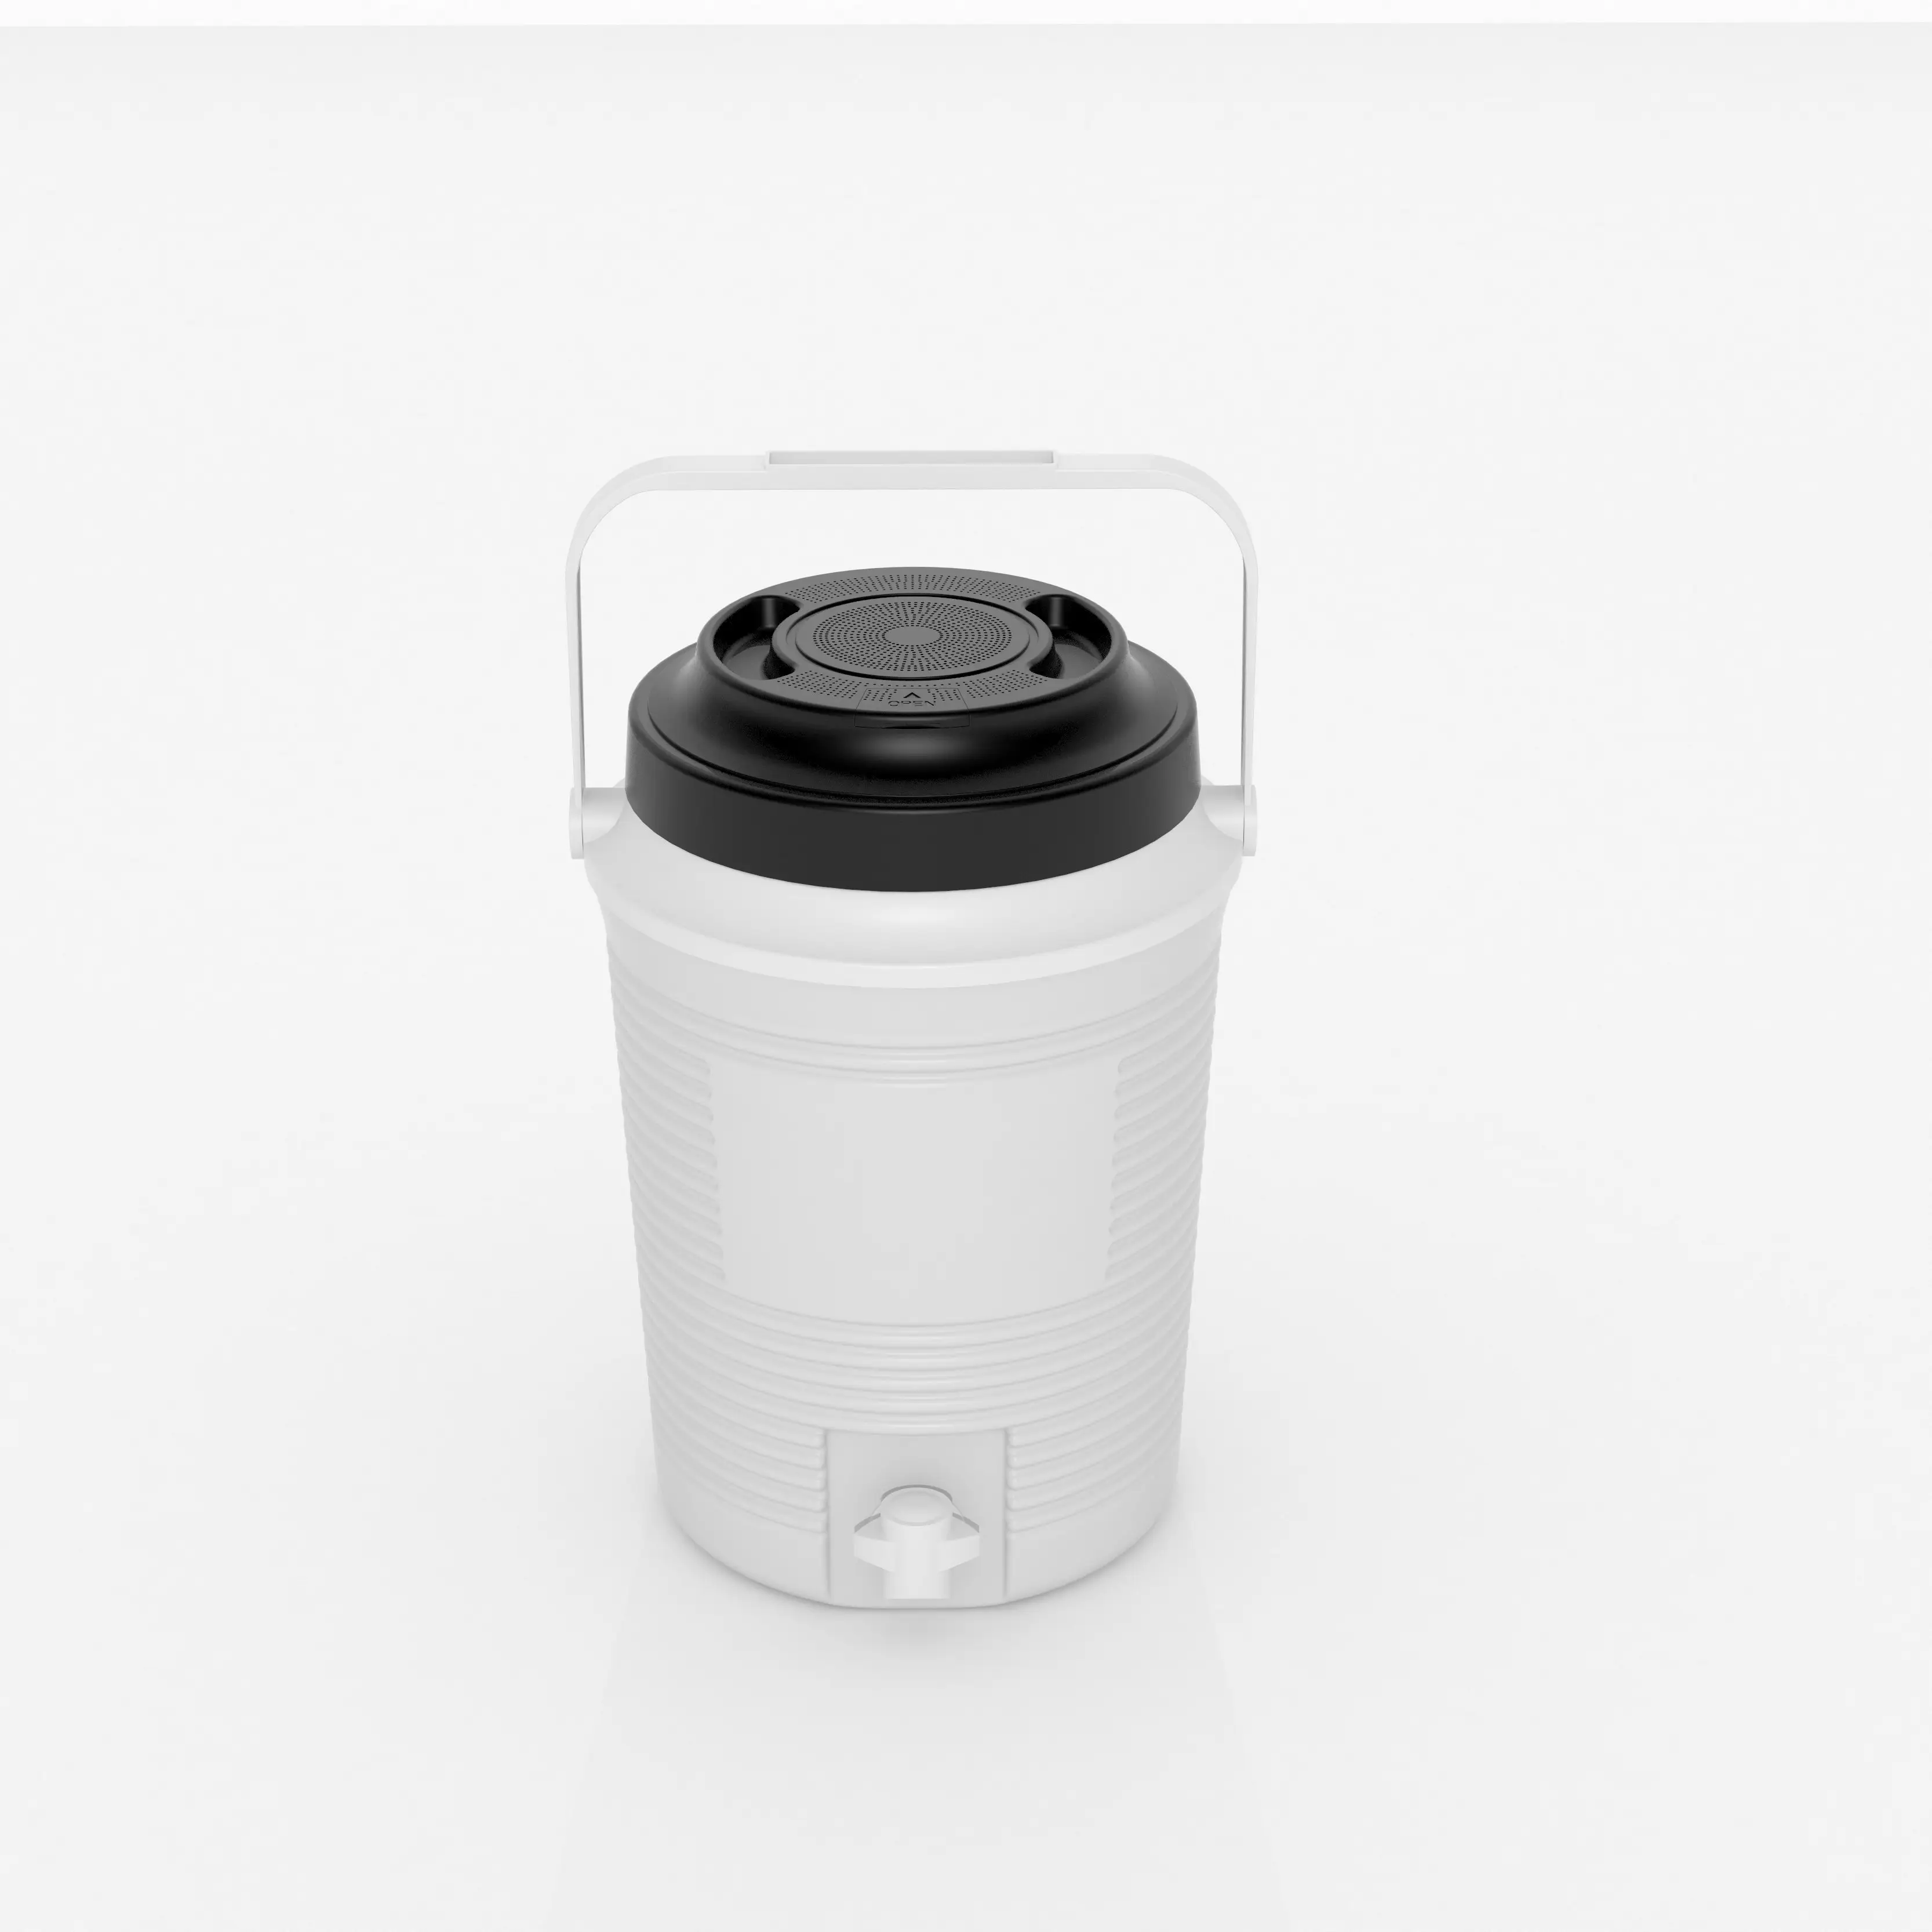 Refroidisseur TR-2023 de 2 gallons avec haut-parleur, refroidisseur de carafe haut-parleur alimentaire PE Carton OEM isolation + haut-parleur Bluetooth rayé